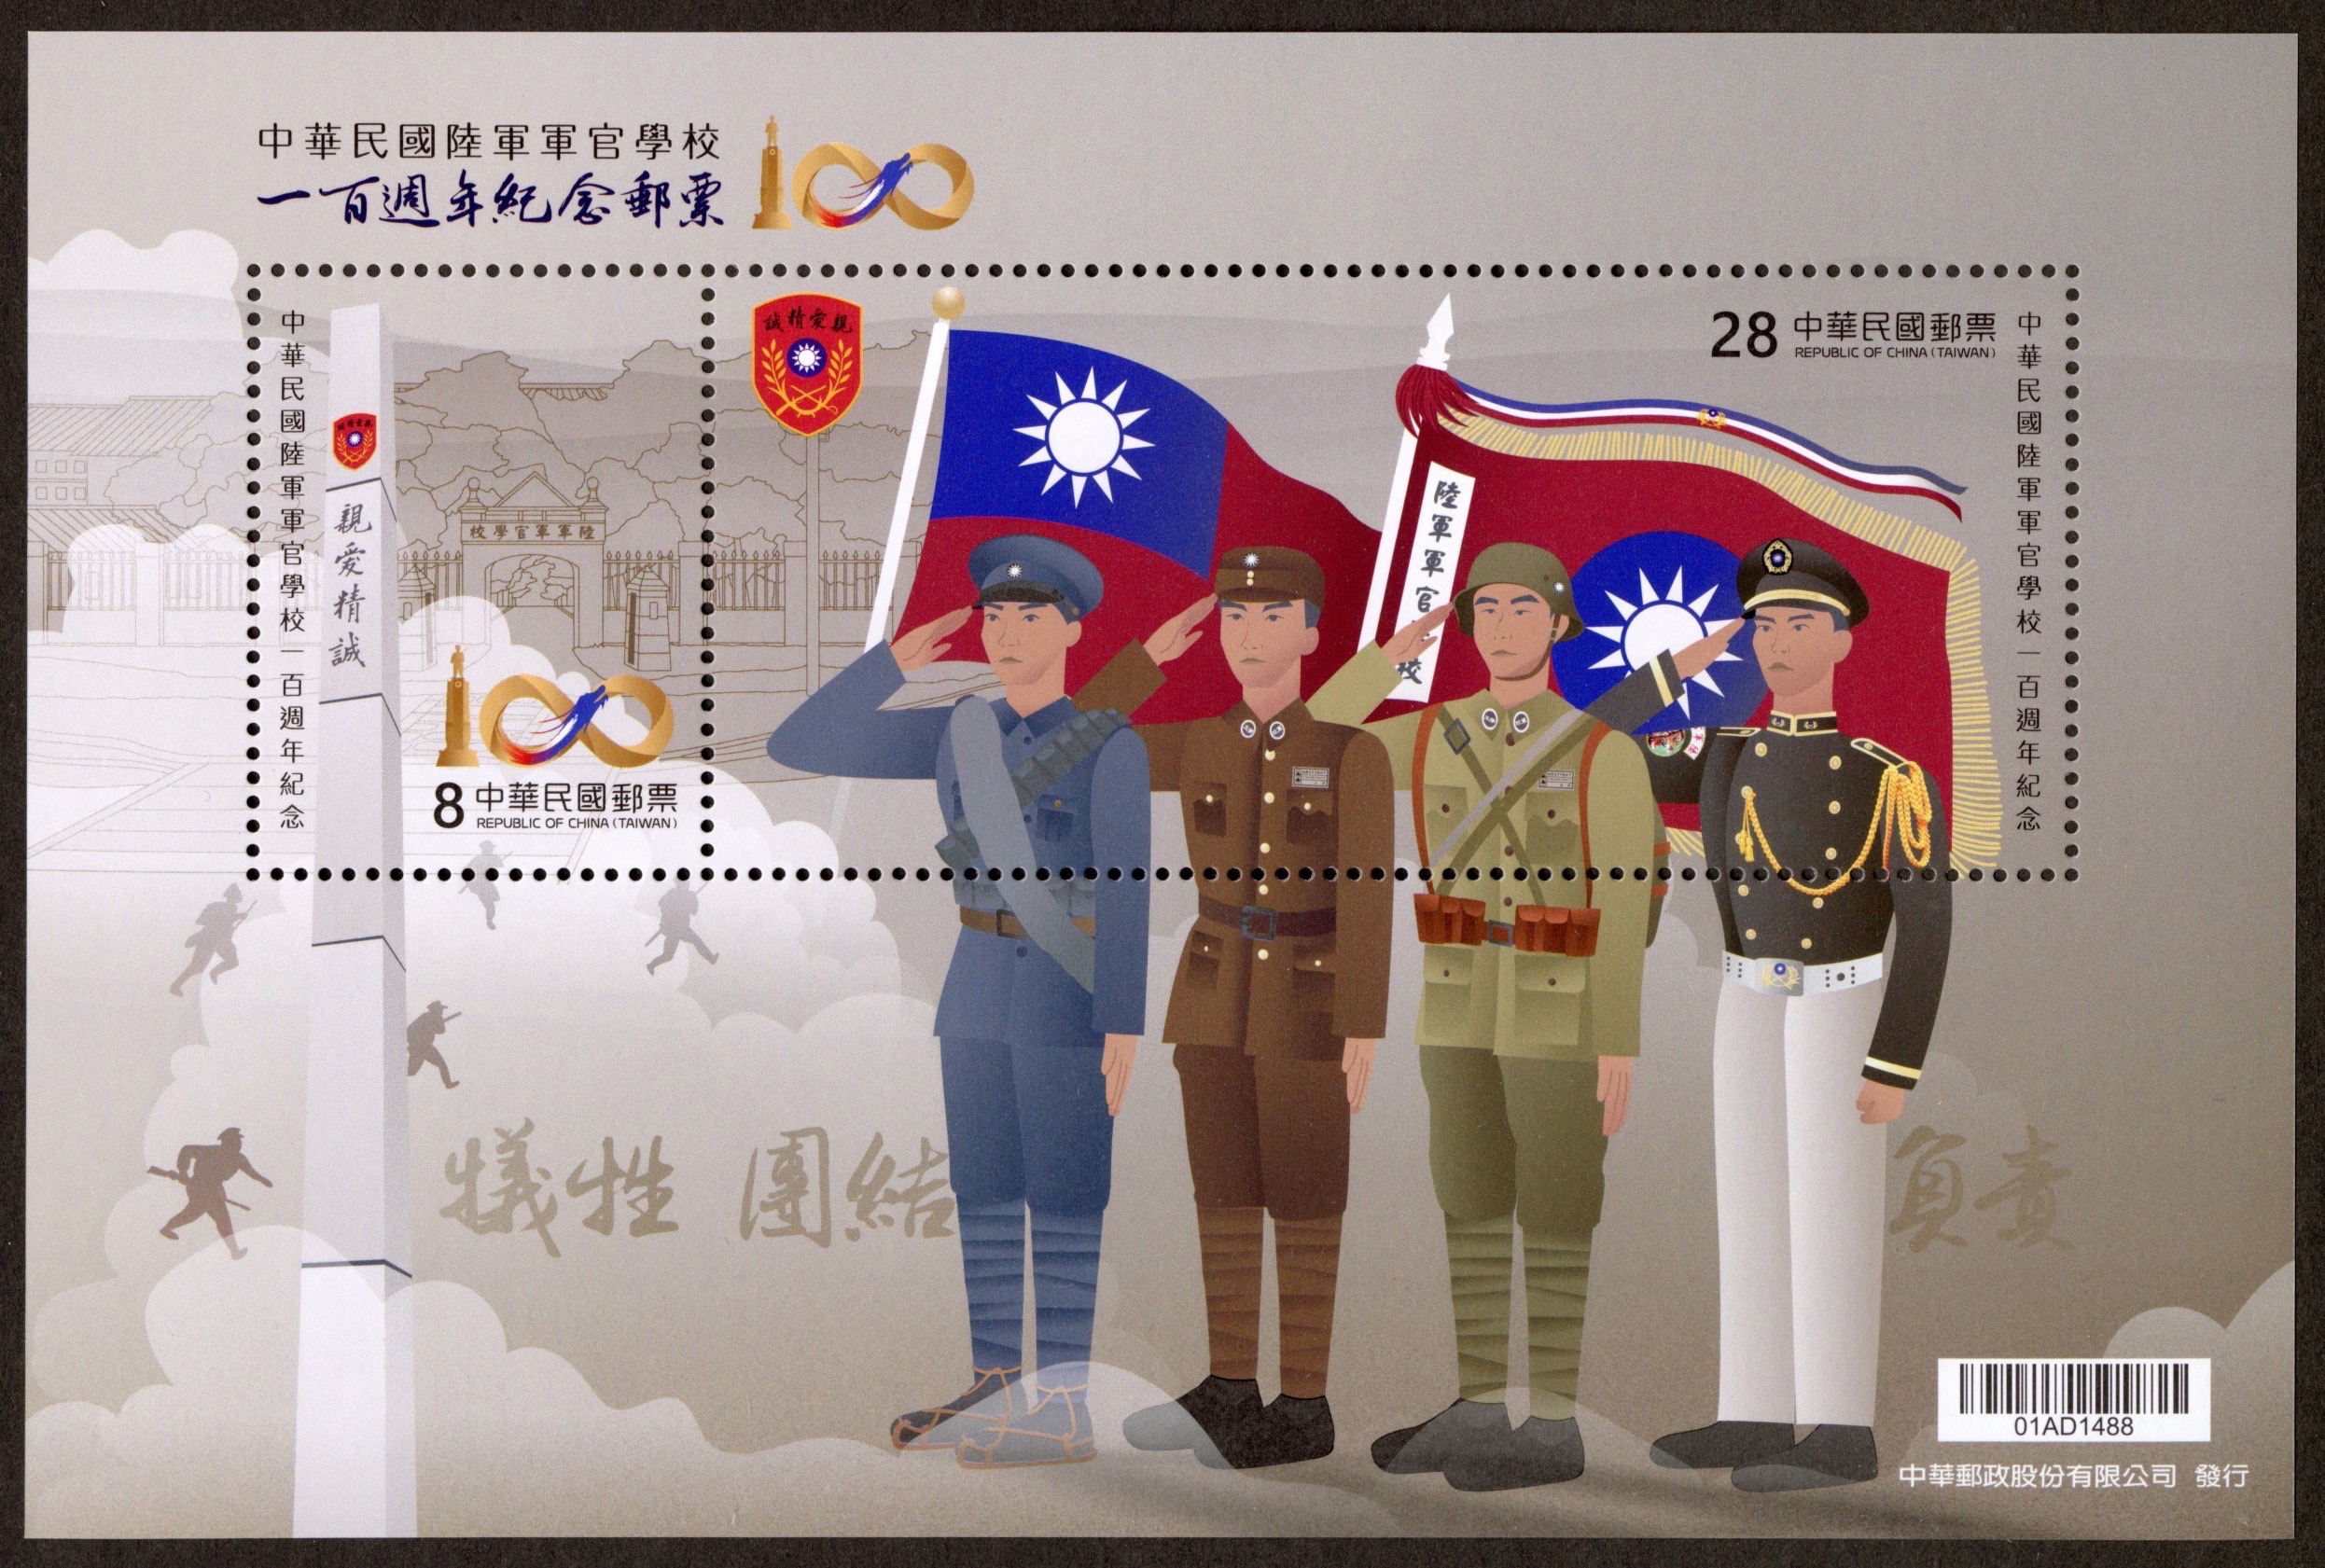 中華郵政公司推出黃埔軍校百年紀念郵票。圖/中華郵政提供